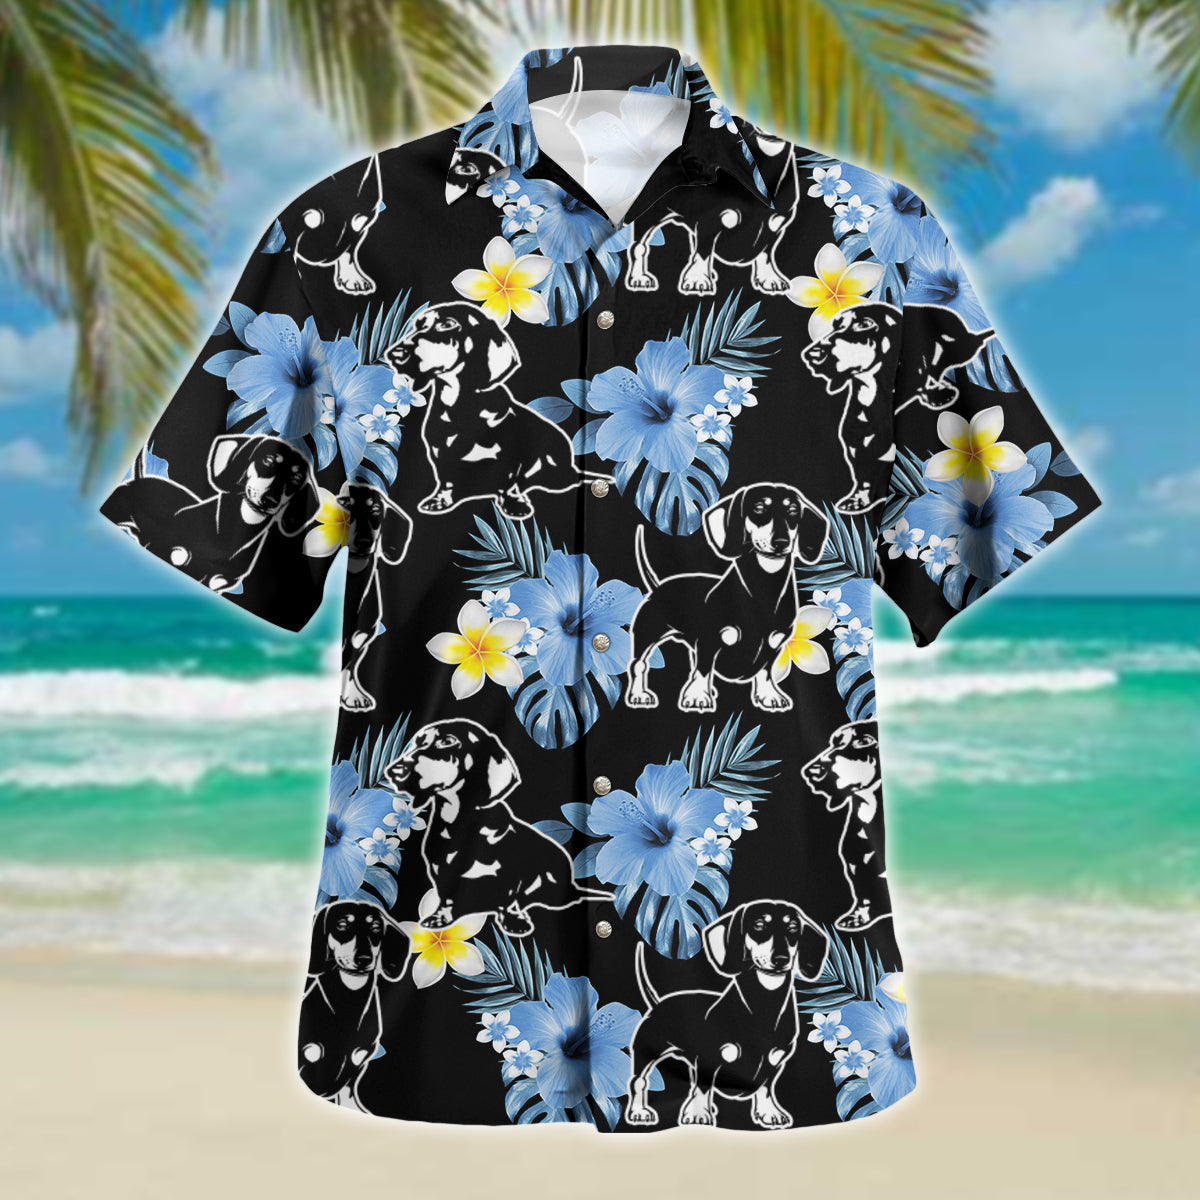 Dachshund dog Hawaiian shirt/ Gift for Dog lovers